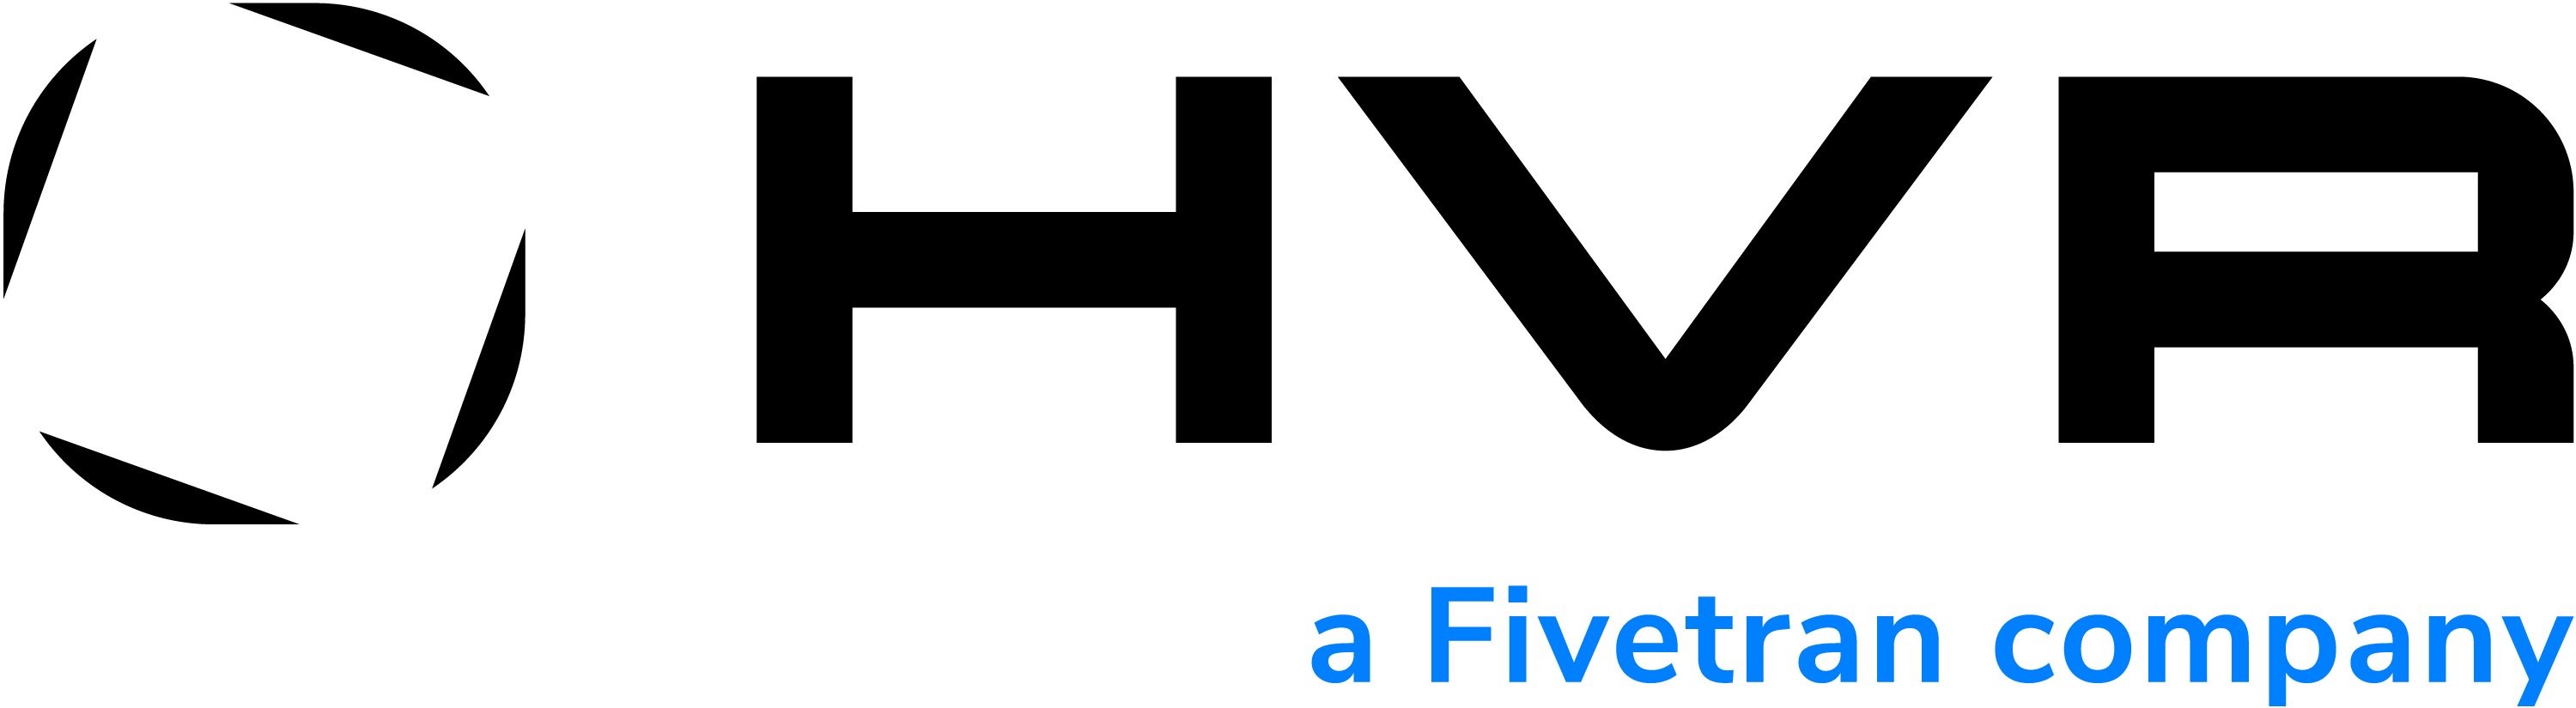 HVR-logo-a-fivetran-company-black.png